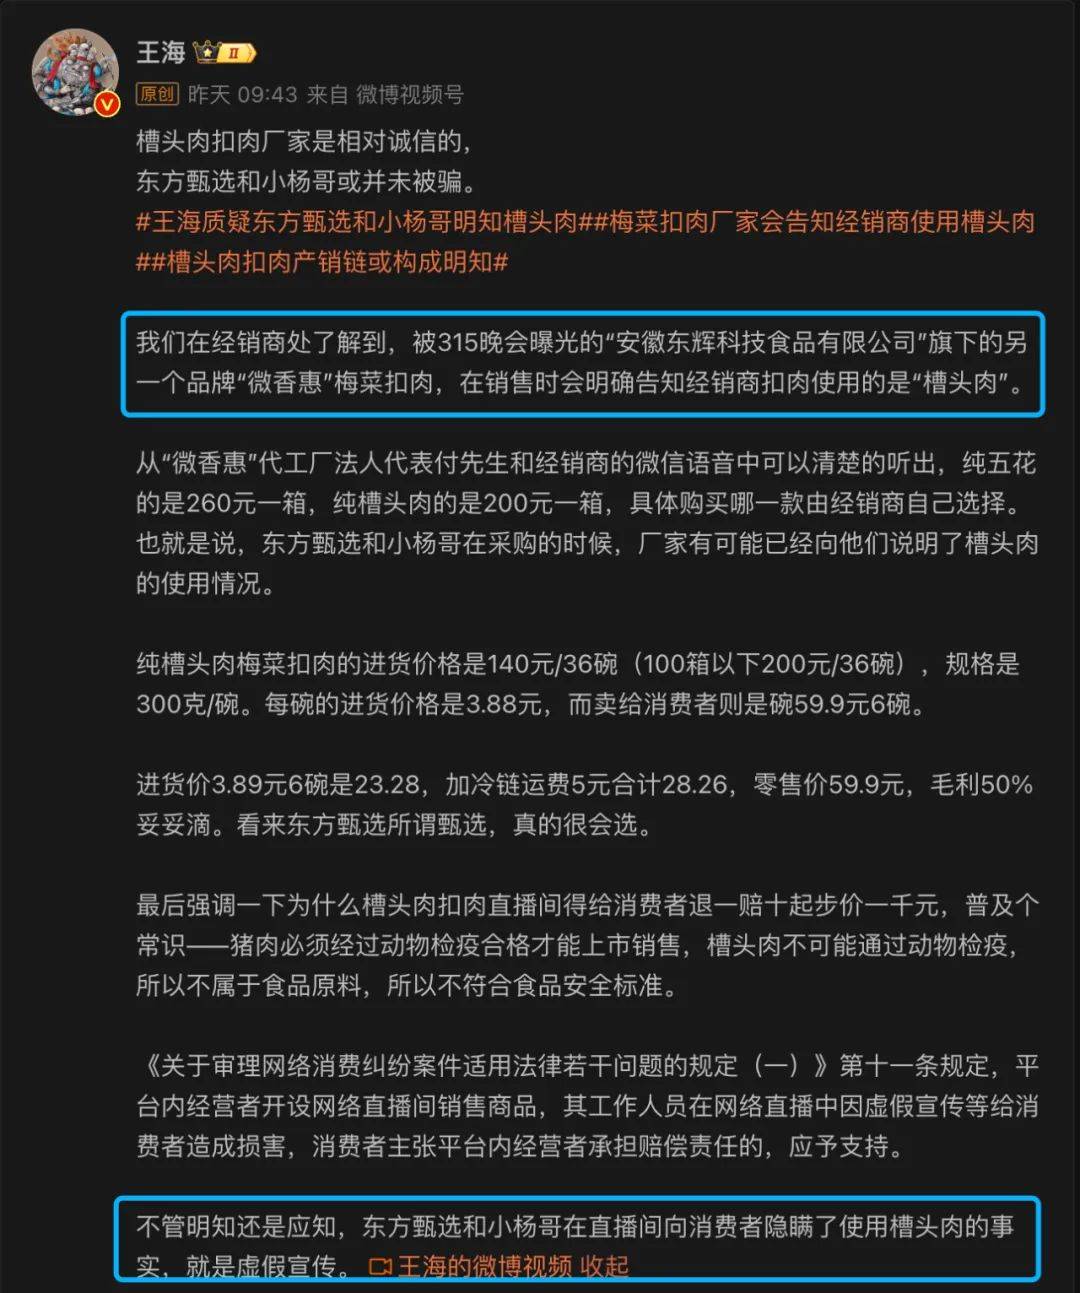 3月18日上午,王海又在微博爆料称,据他们从经销商处了解到的信息,质疑